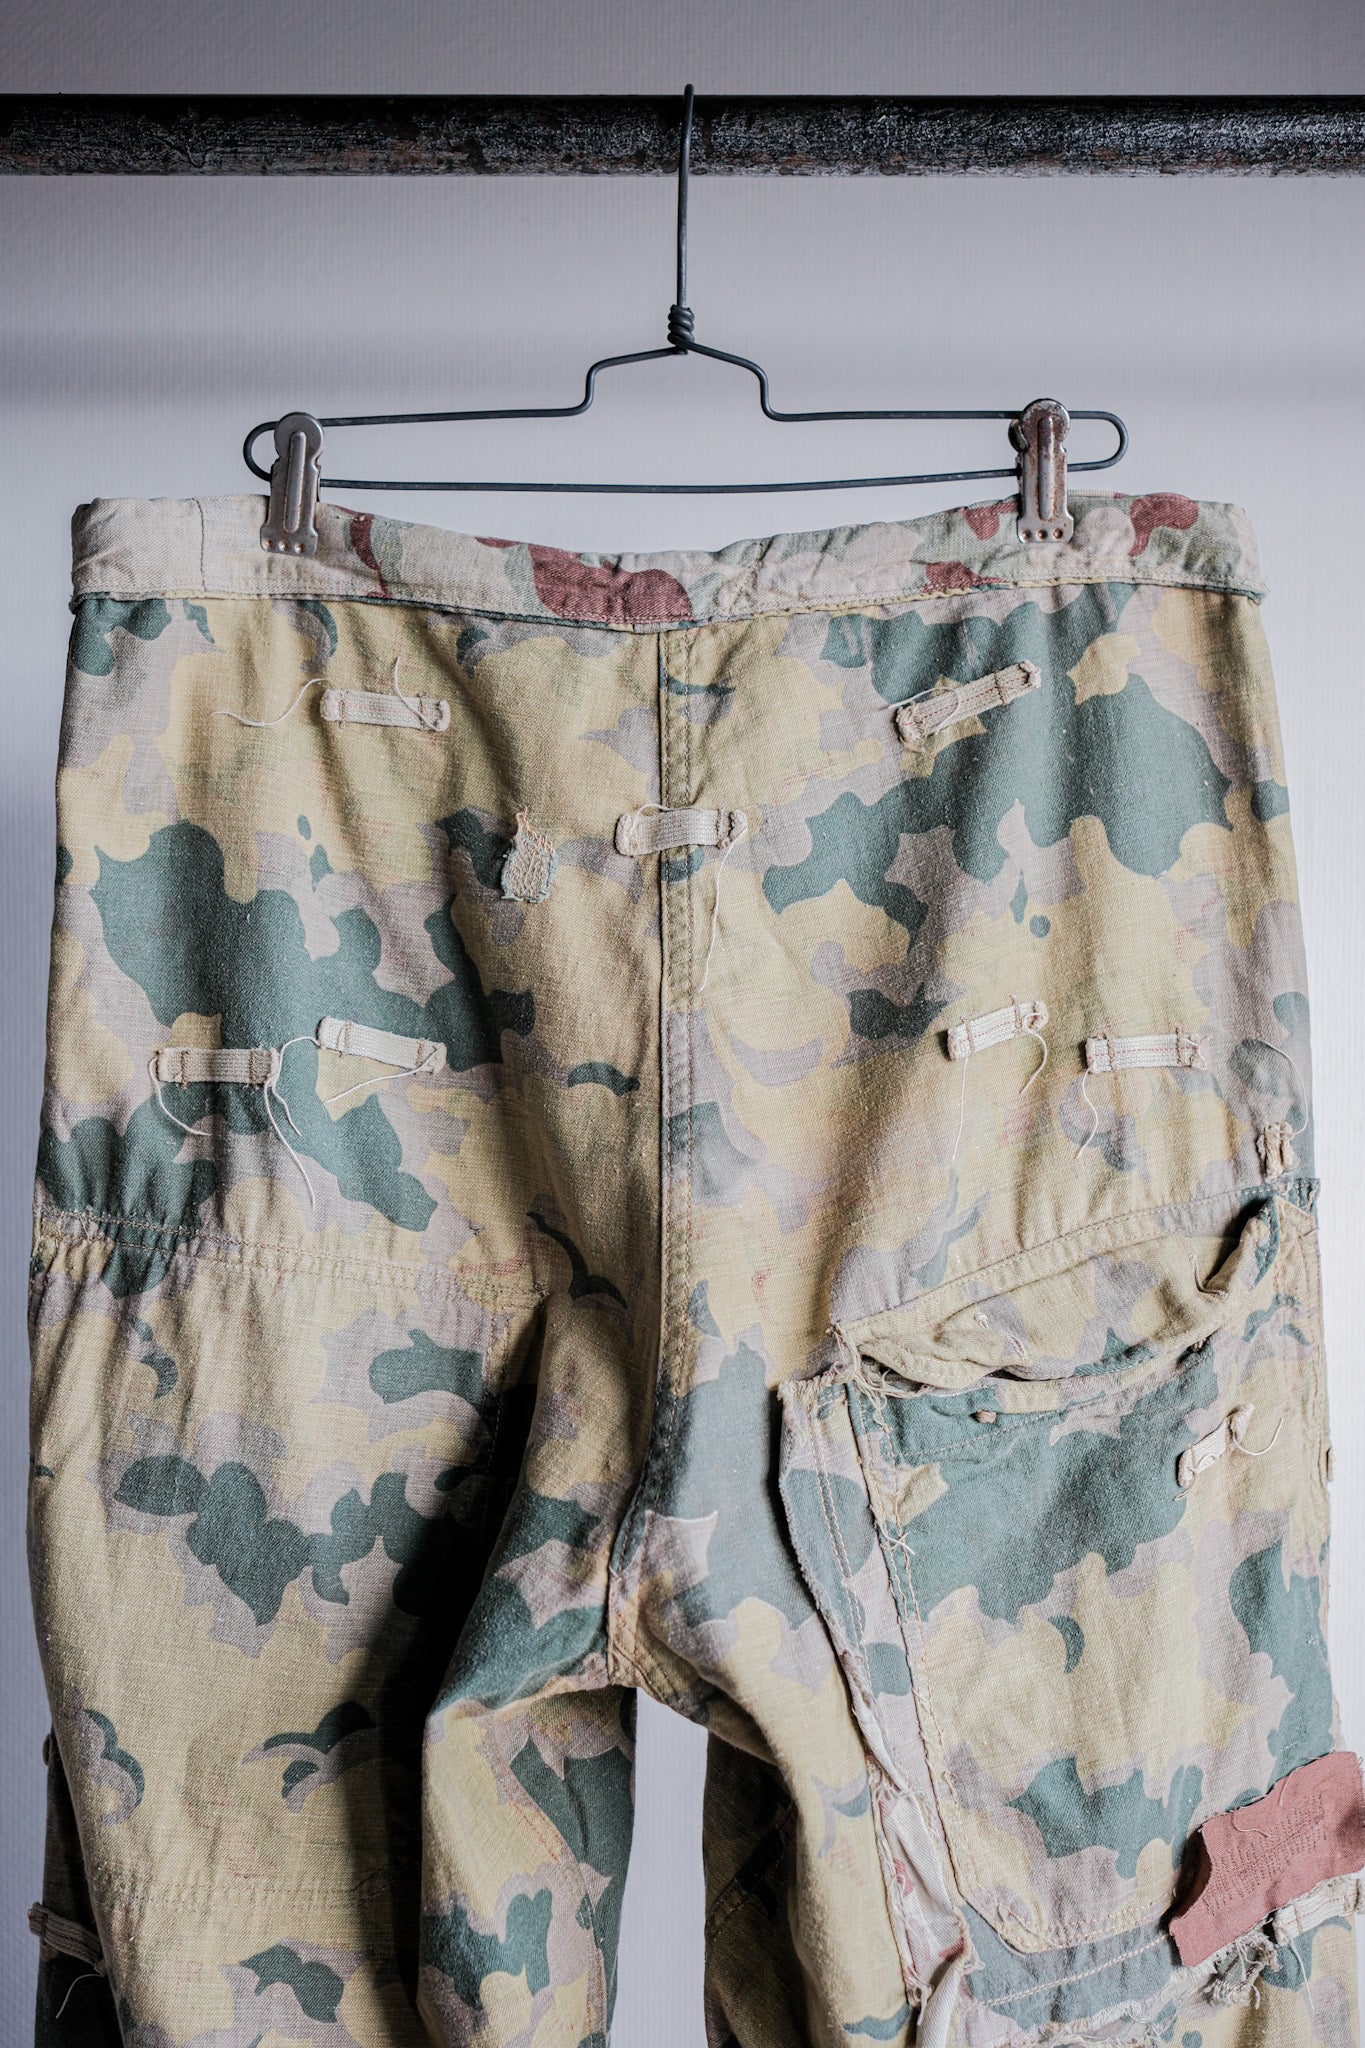 [〜50年代]捷克斯洛伐克軍隊雲掩蓋了可逆的褲子“修改”